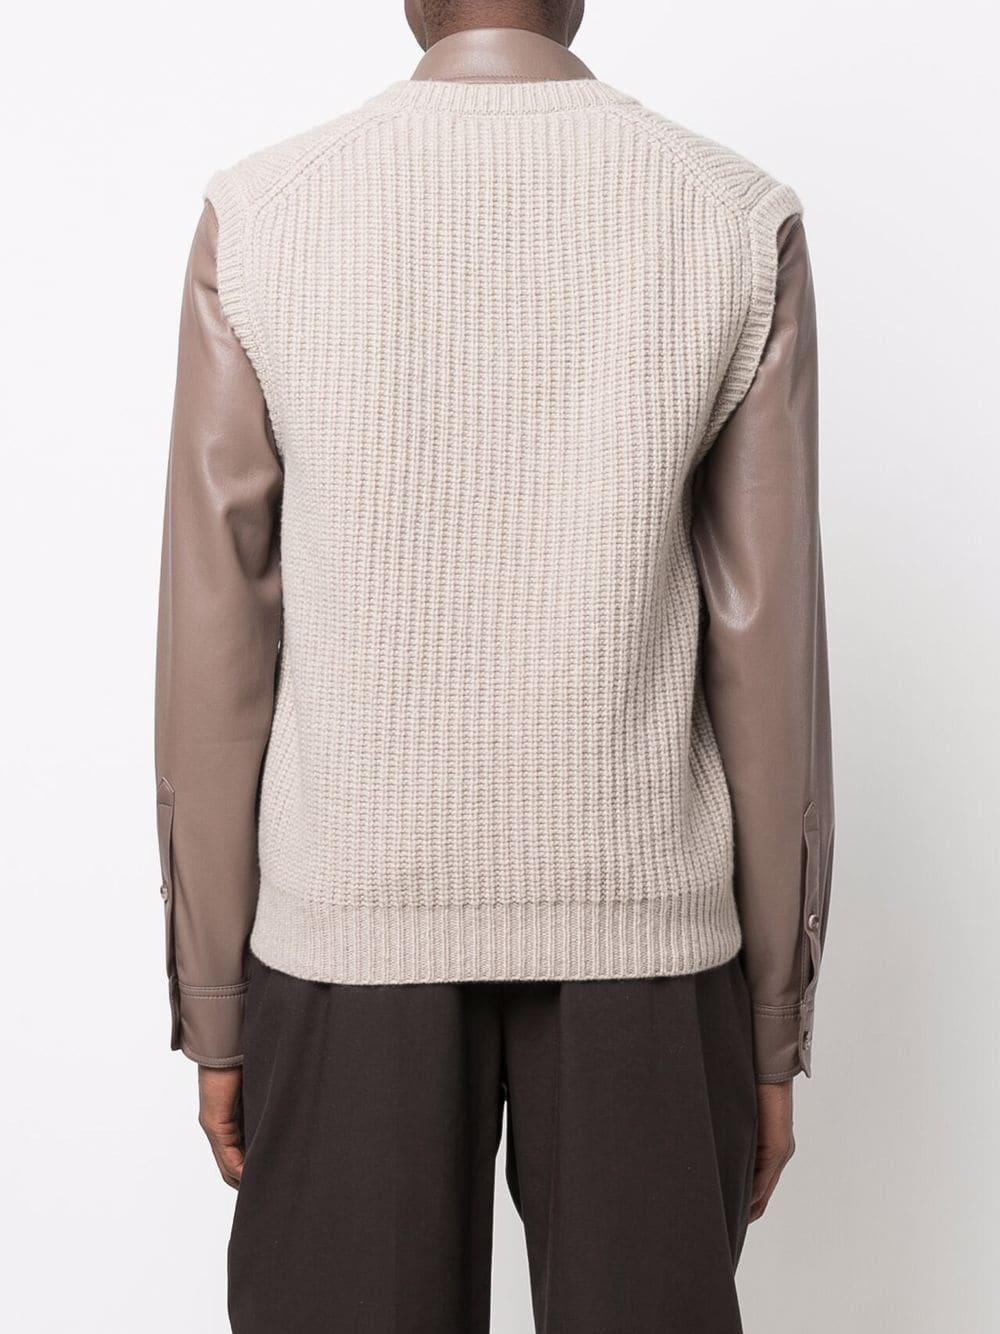 Pull en laine à col rond Laines Nanushka pour homme en coloris Neutre Homme Vêtements Pulls et maille Sweats sans manches 